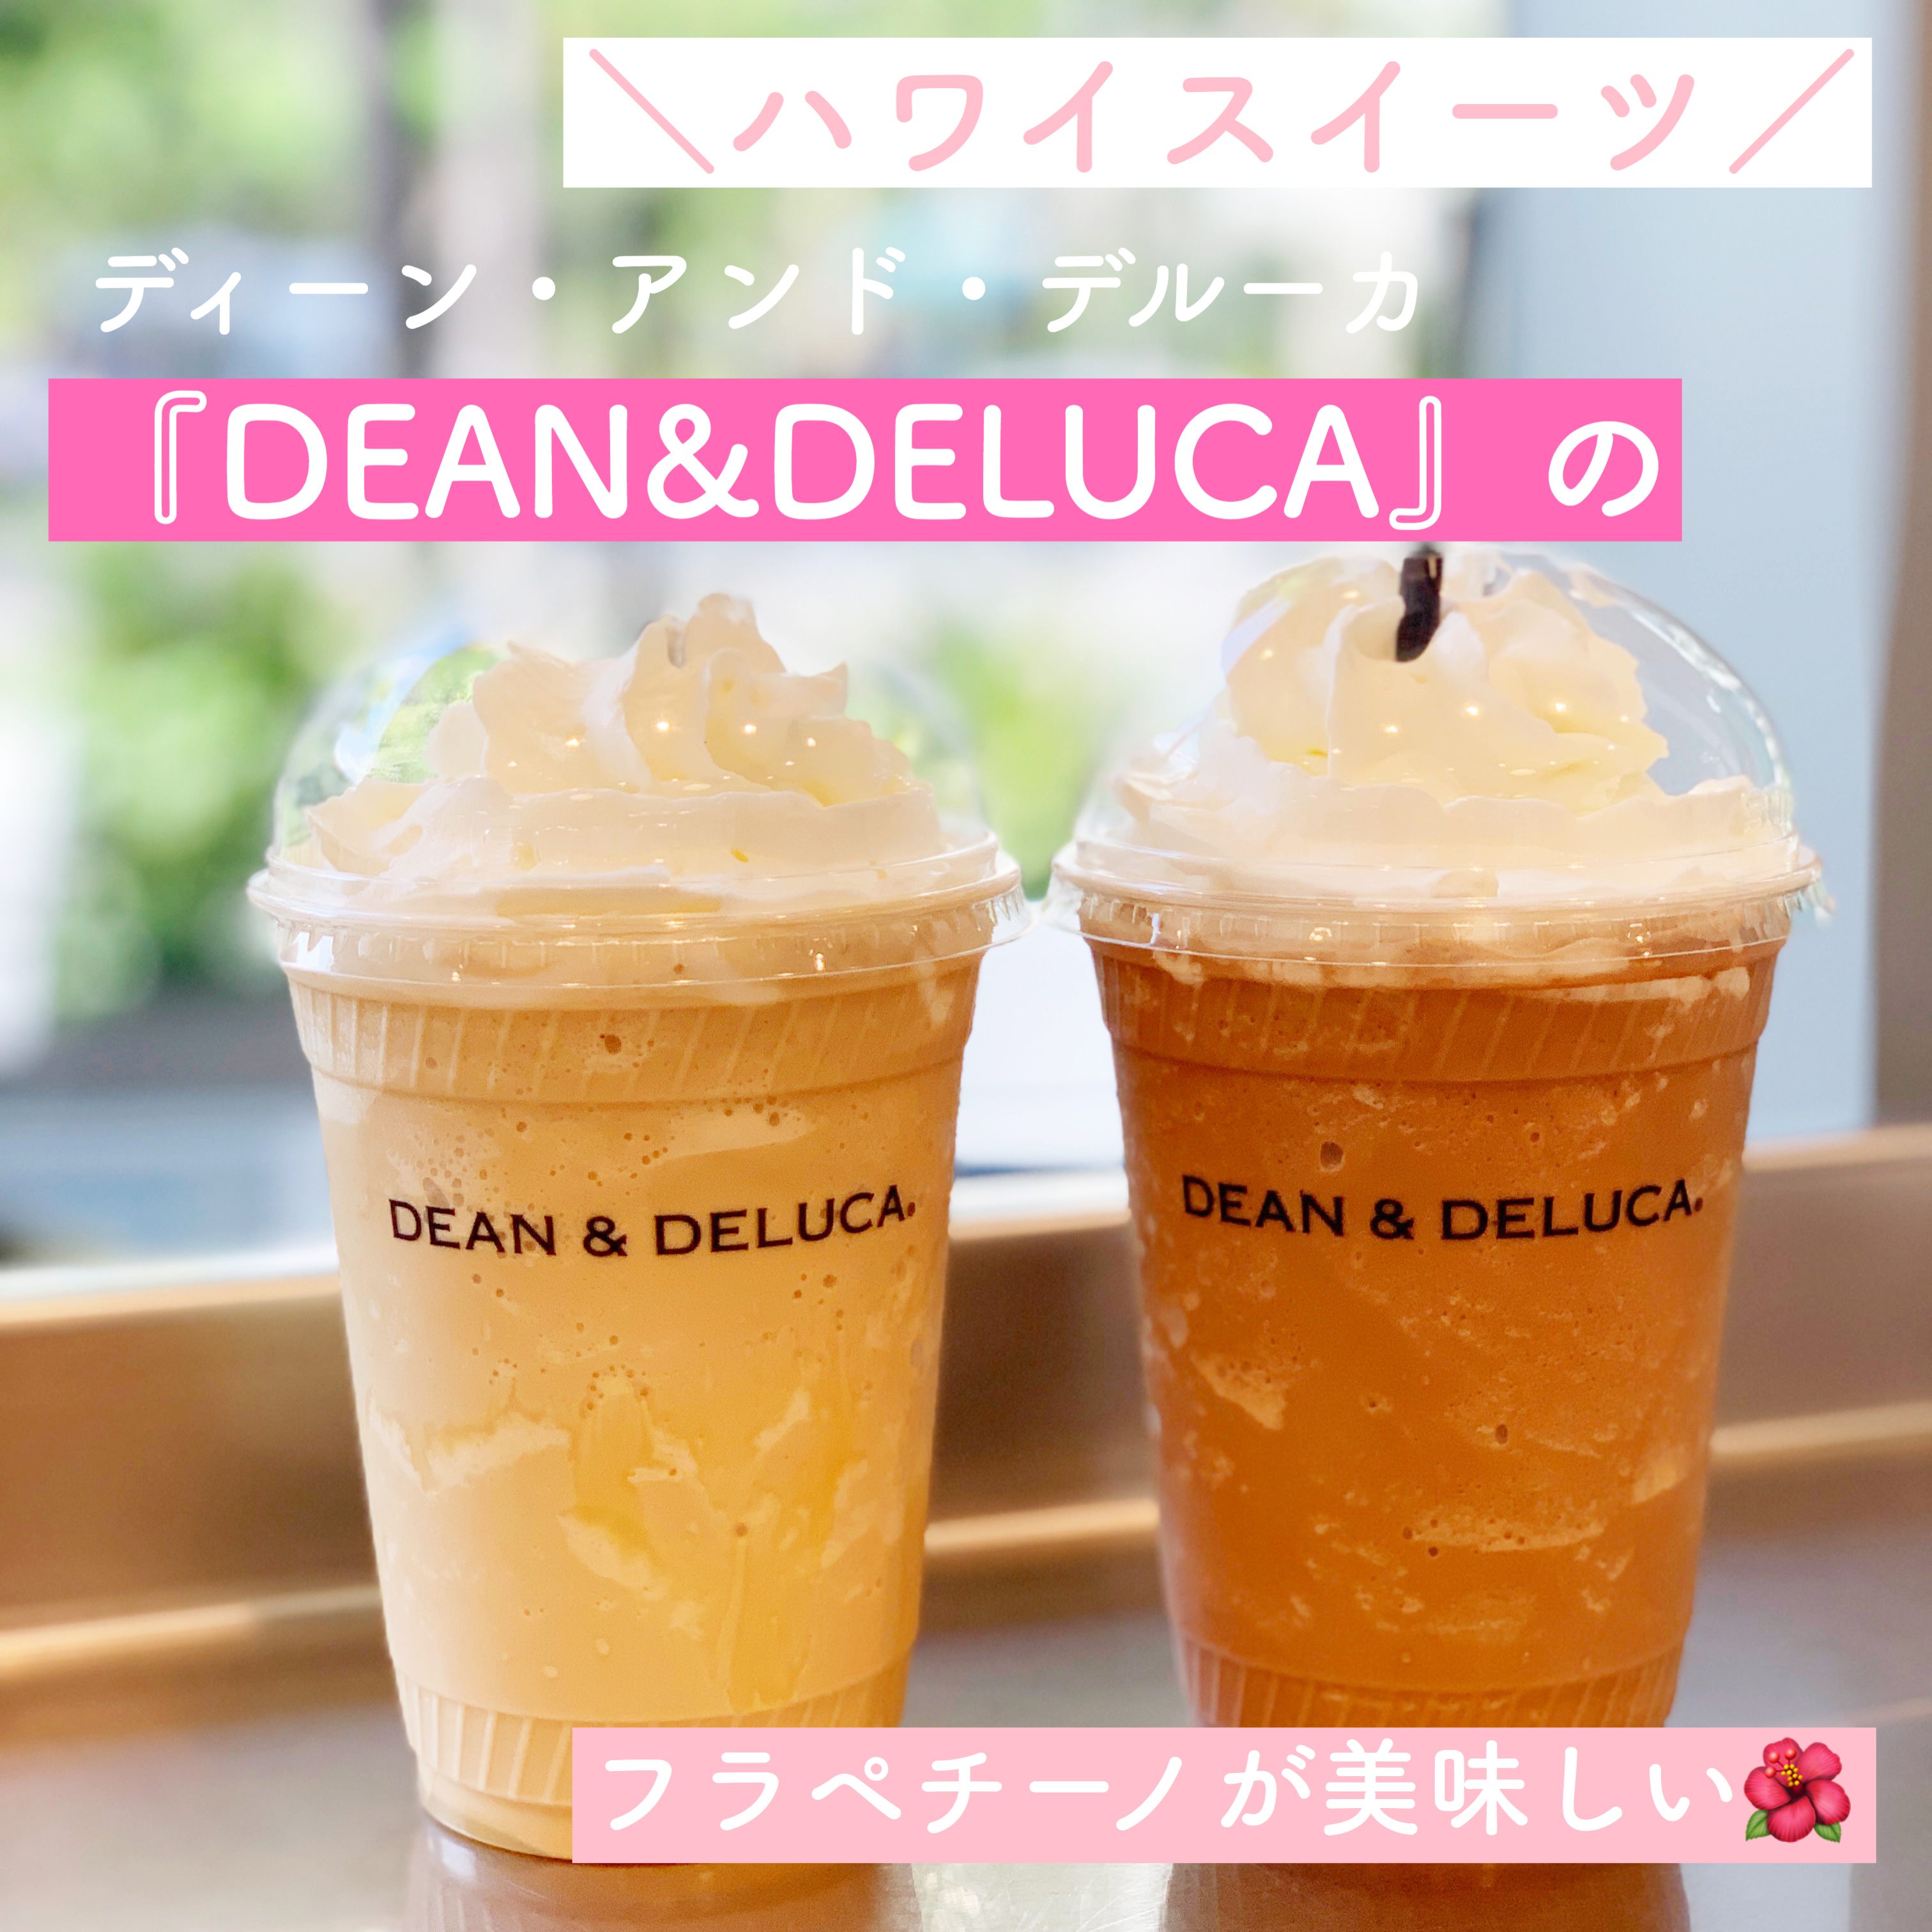 【ハワイカフェ】「DEAN&DELUCA」のフラペチーノが美味しい〜リッツカールトン店〜